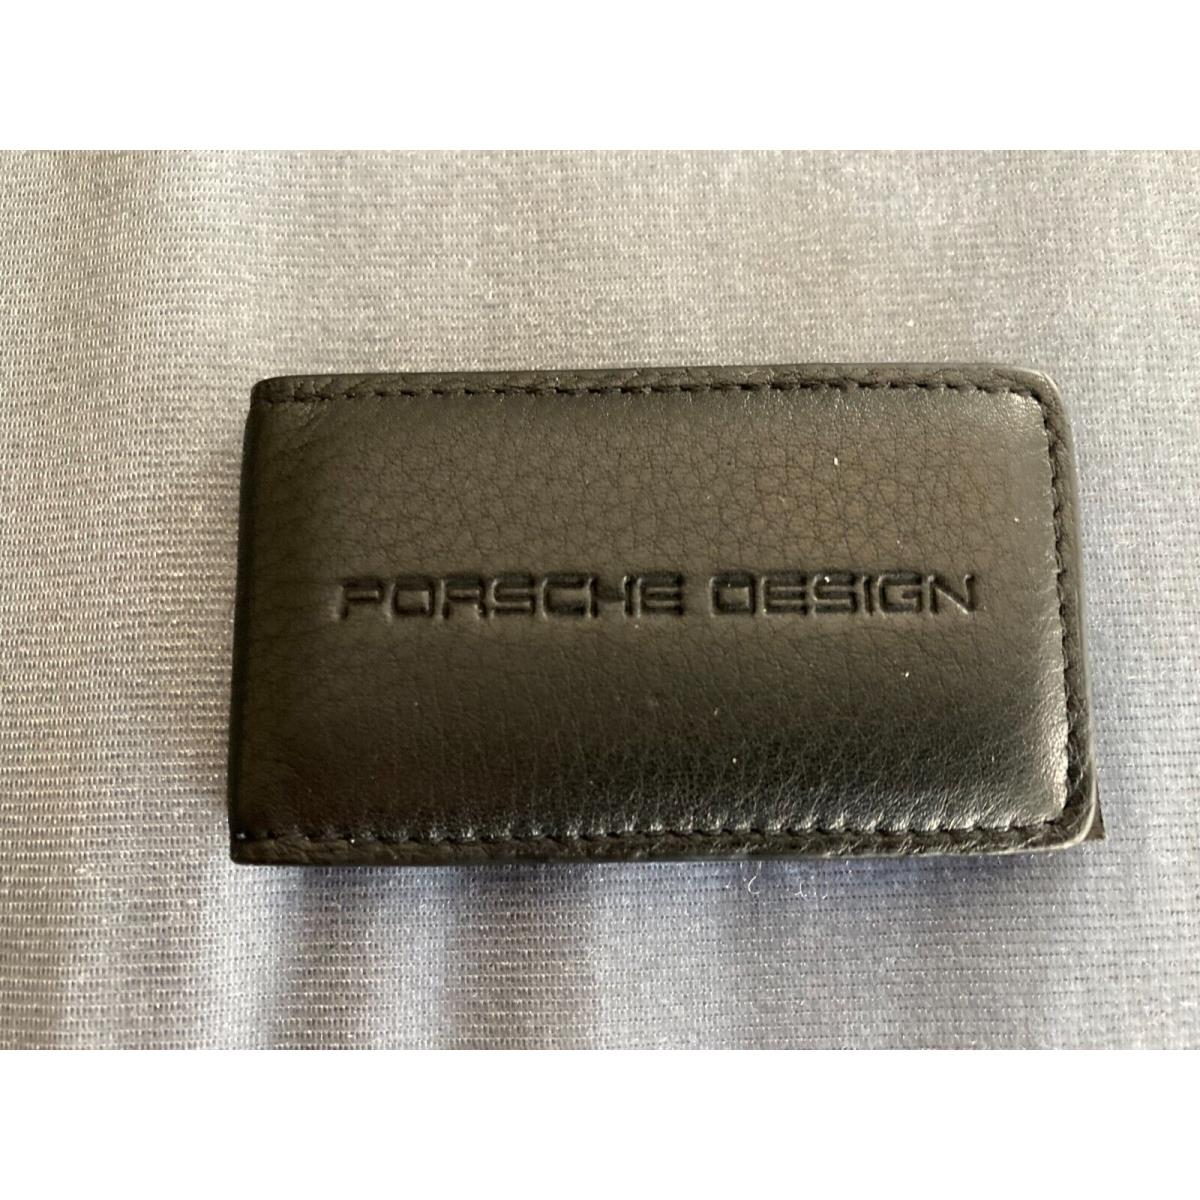 Porsche Design Black Leather Magnetic Business Money Clip